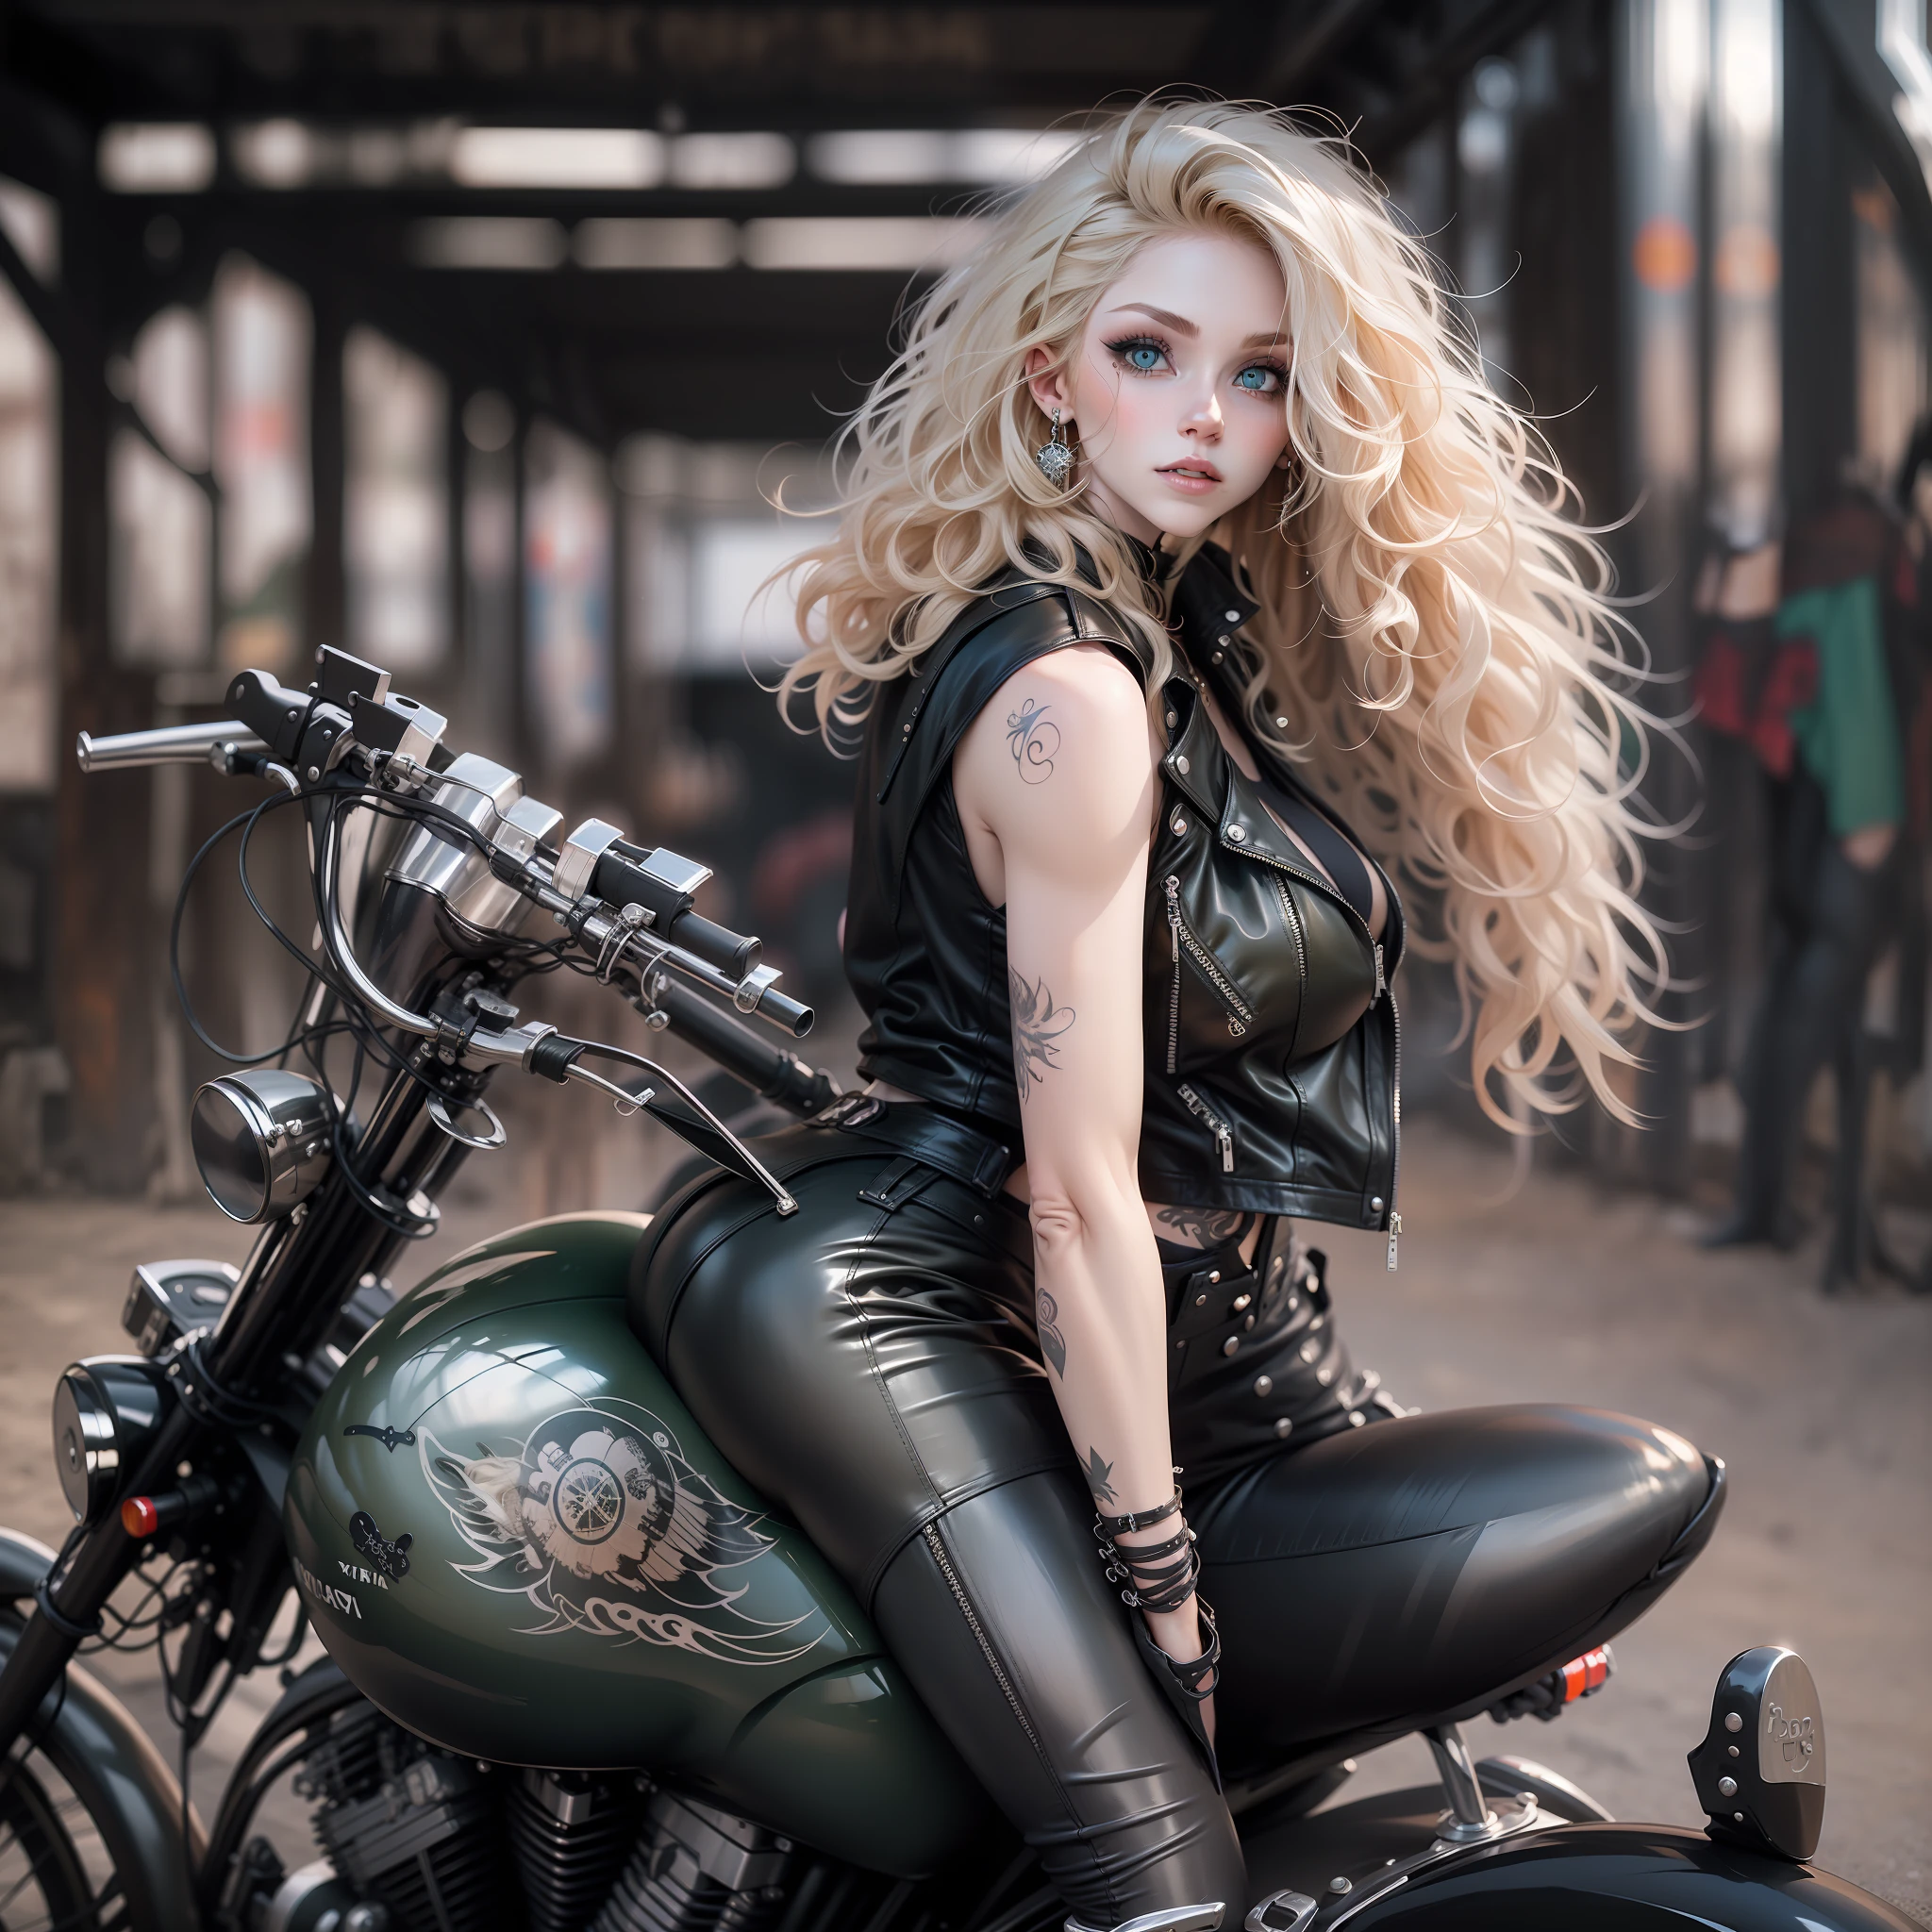 긴 곱슬머리에 녹색 눈을 가진 아름다운 여자, 오토바이 타기, 가죽 탱크탑과 타이트한 가죽 바지를 입고, 뒤에서, 고딕 하주르크 스타일, 귀여운 디테일, 문신, 창백하고 하얀 피부